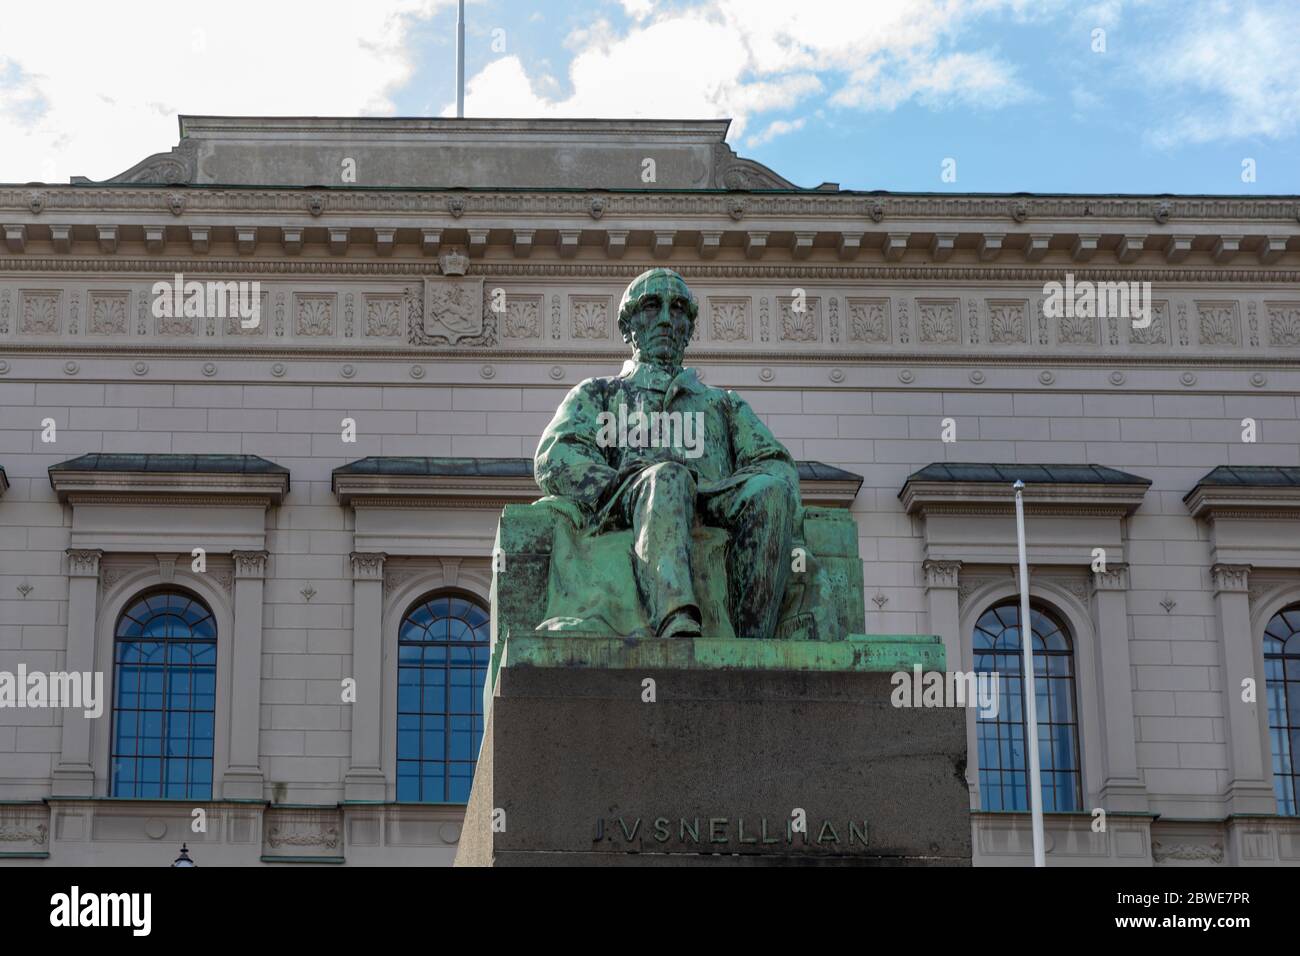 Statua di bronzo di J.V. Snellman di fronte alla Banca nazionale finlandese nel centro di Helsinki Foto Stock